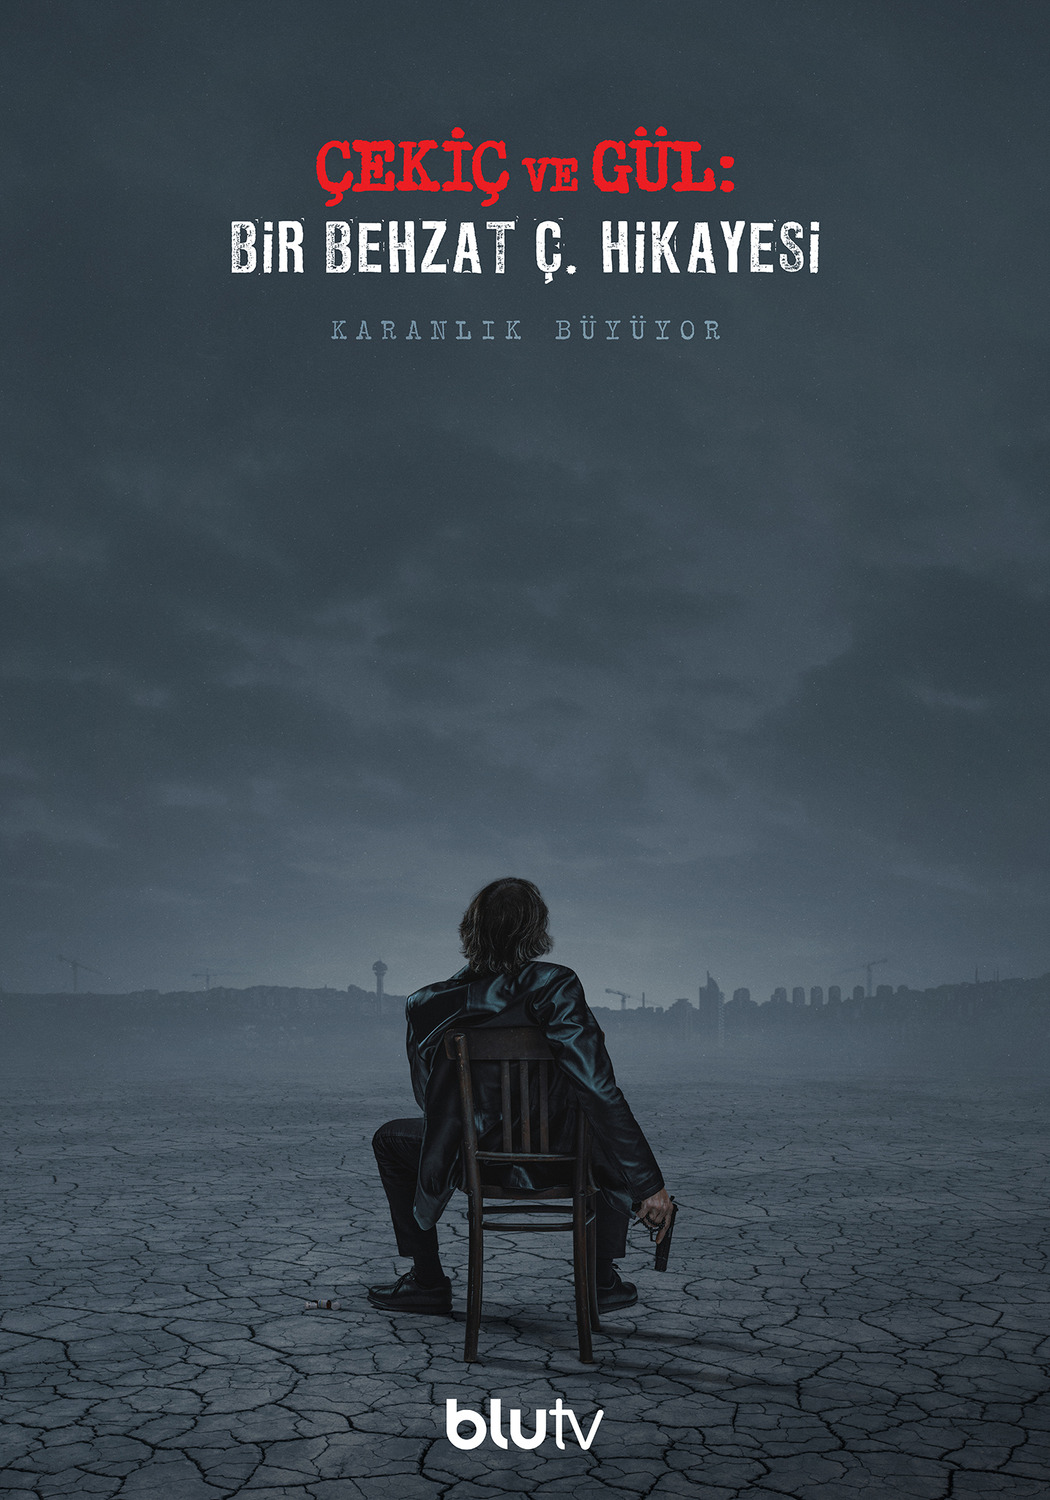 Extra Large TV Poster Image for Çekiç ve Gül: Bir Behzat Ç. Hikayesi (#1 of 9)